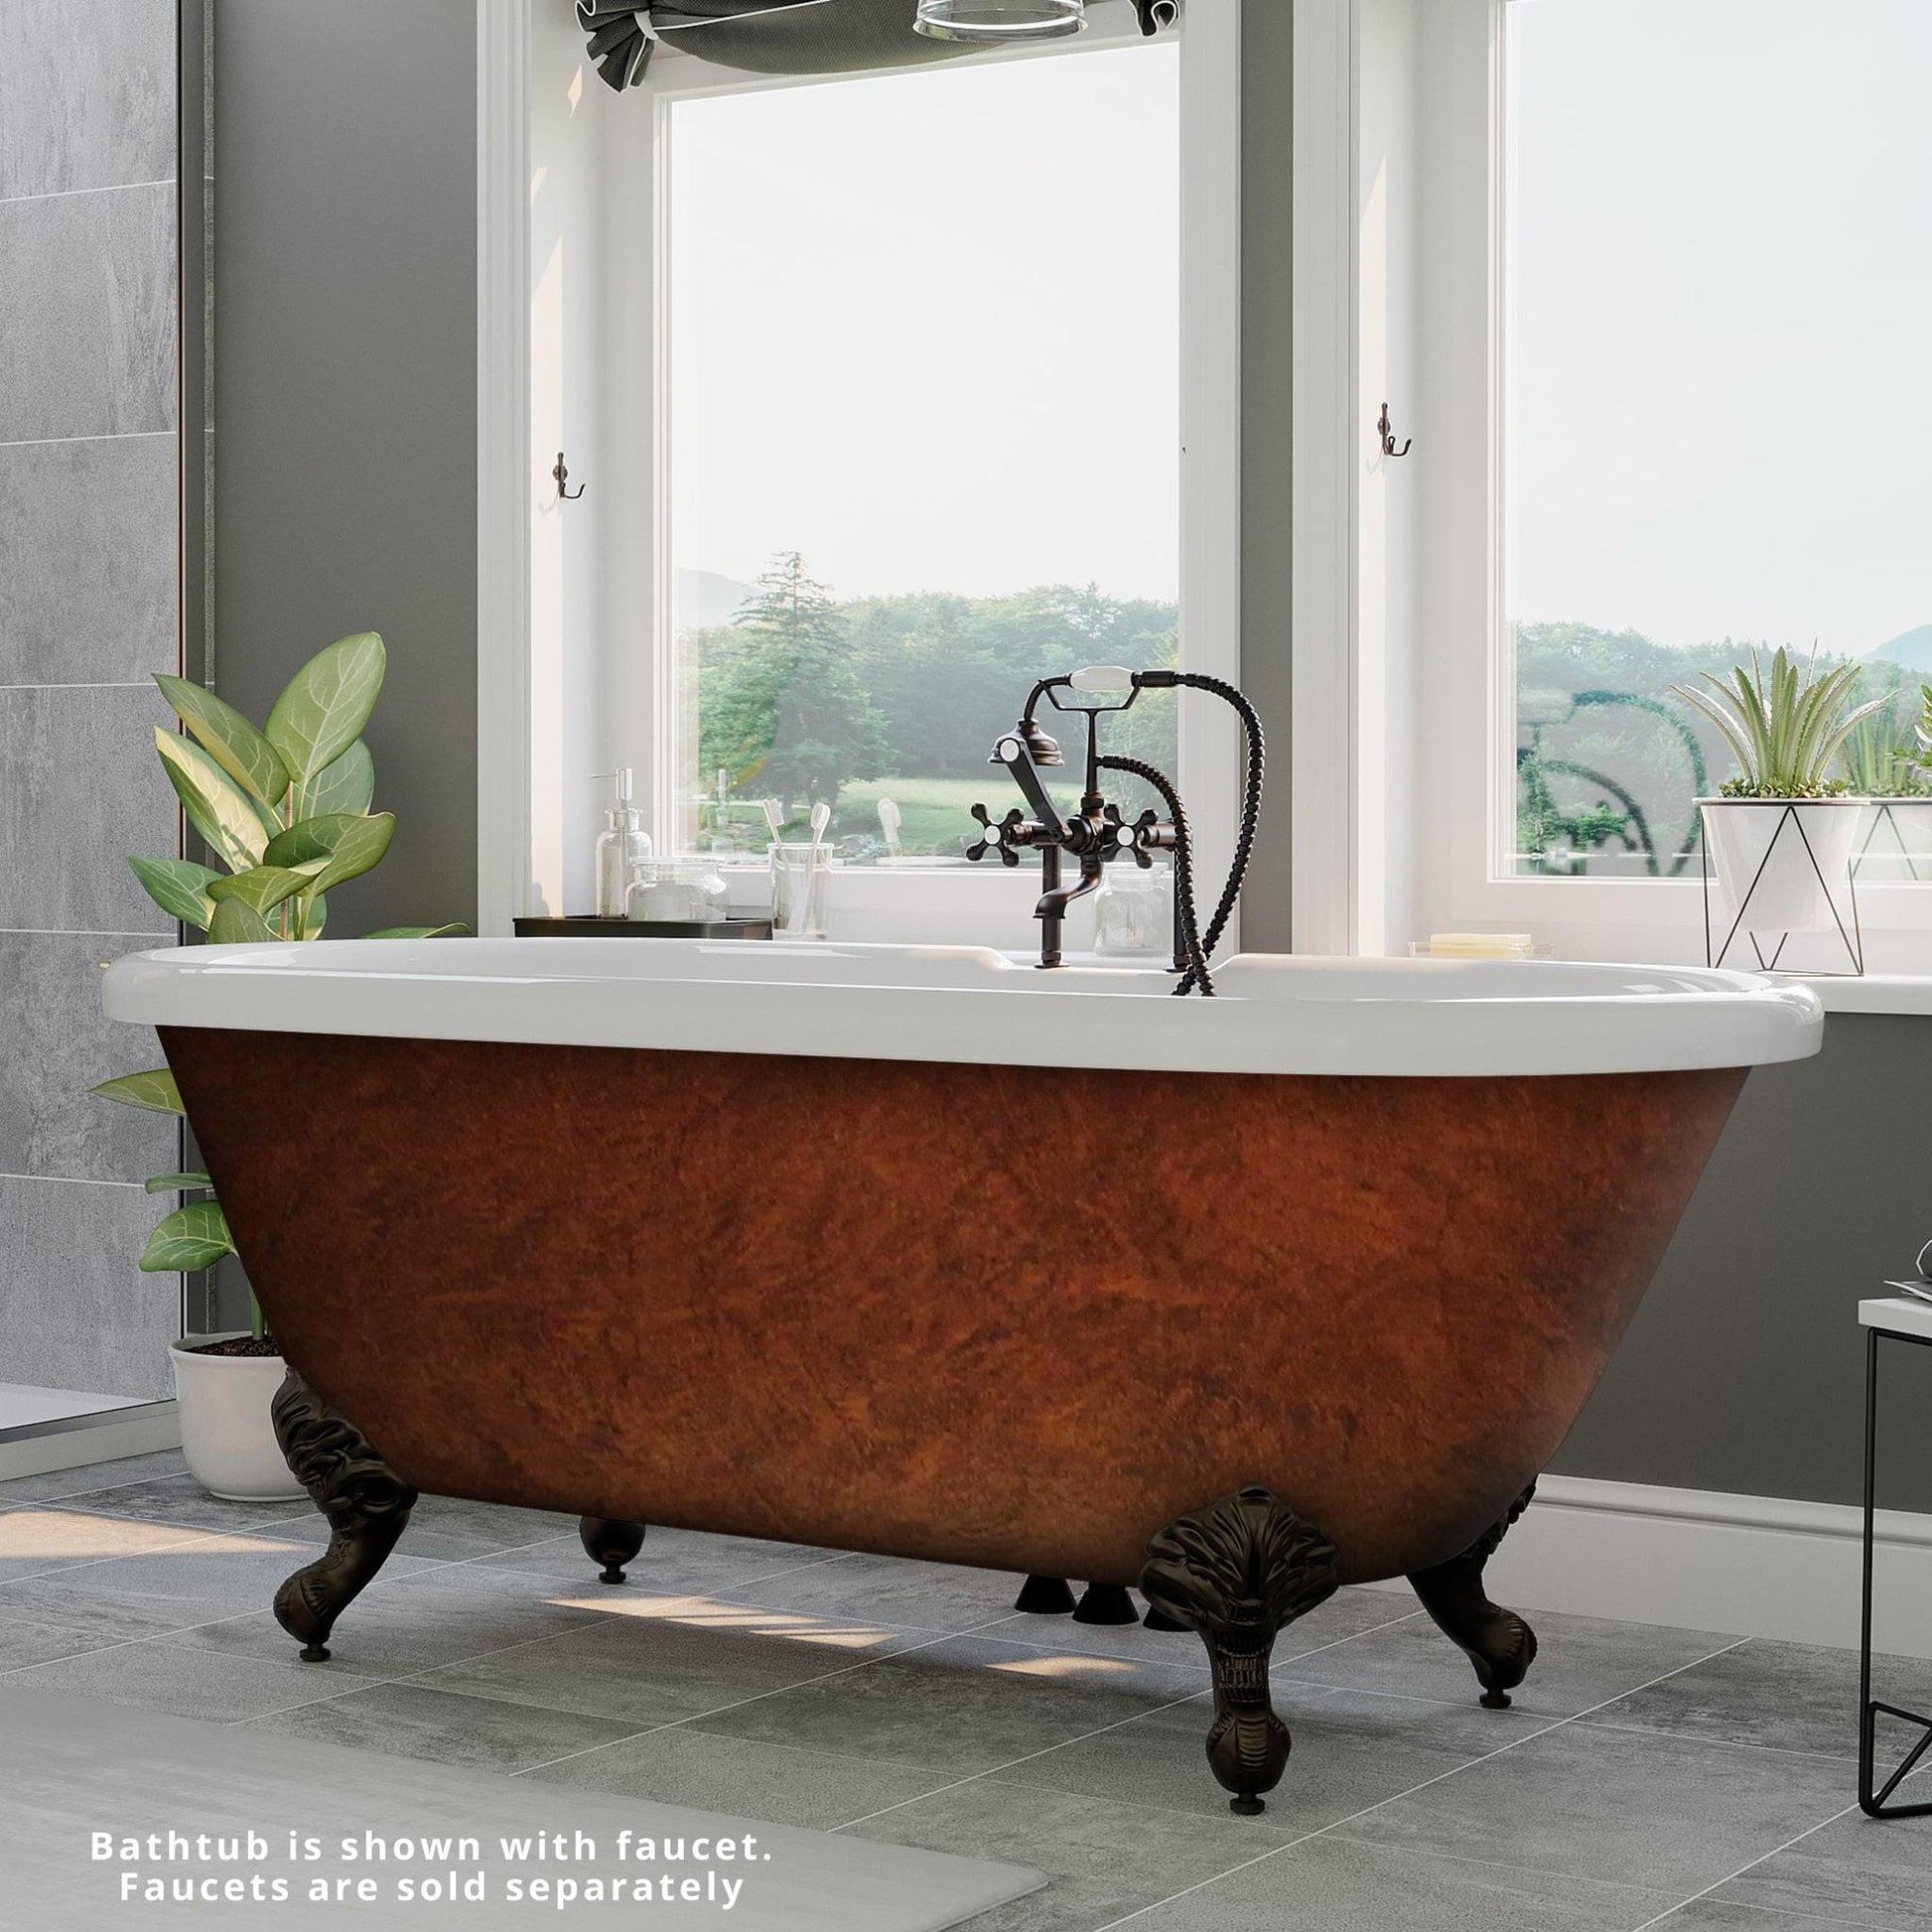 Antique Copper Clawfoot Bathtub